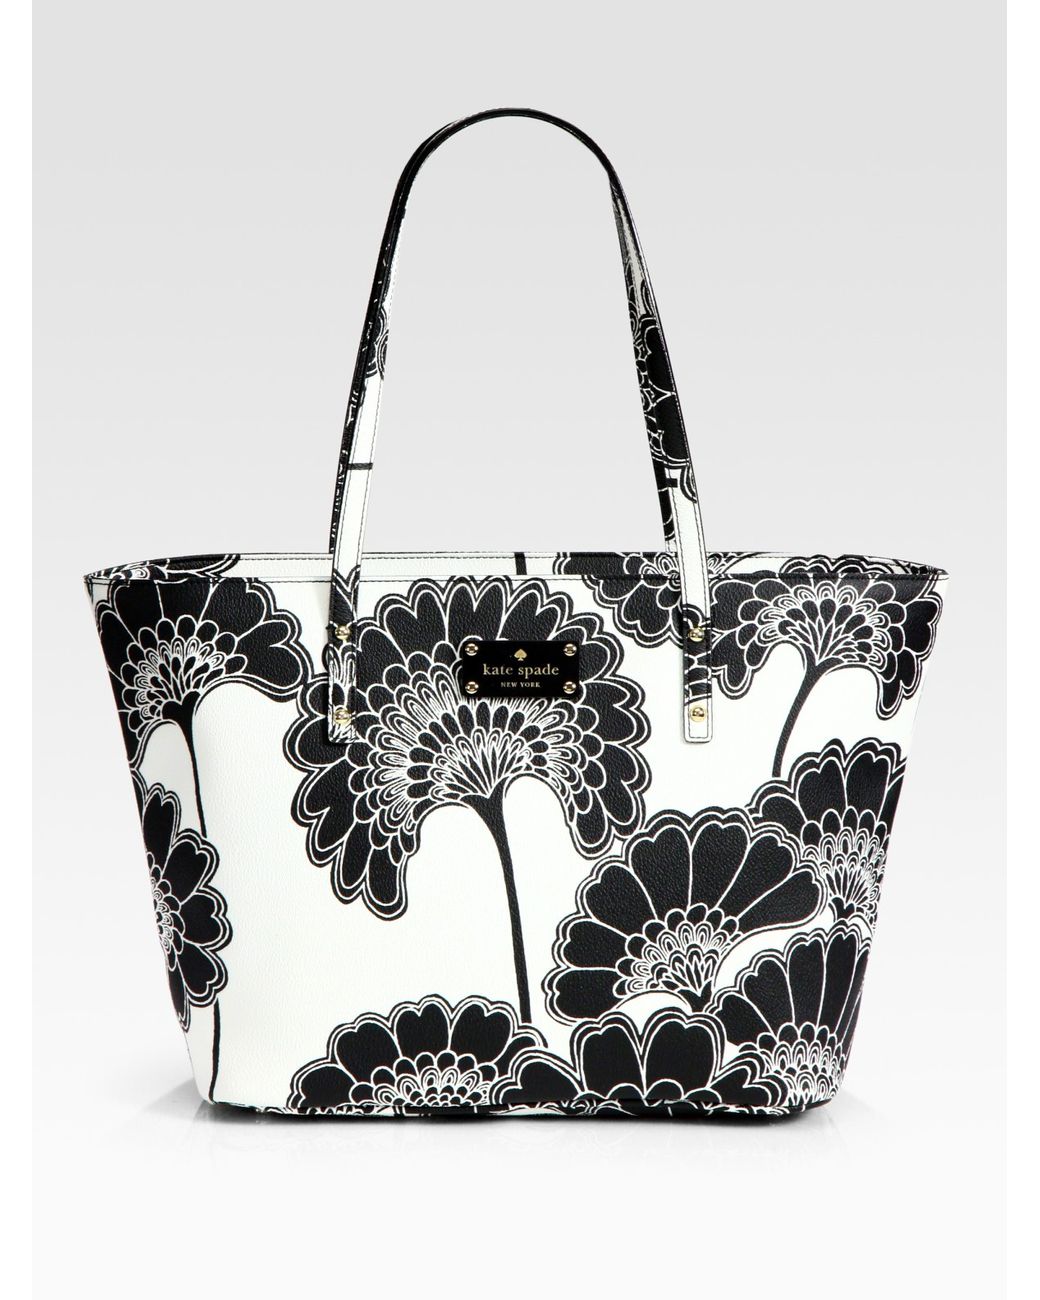 Kate Spade Harmony Floral Vinyl Tote Bag in Black | Lyst